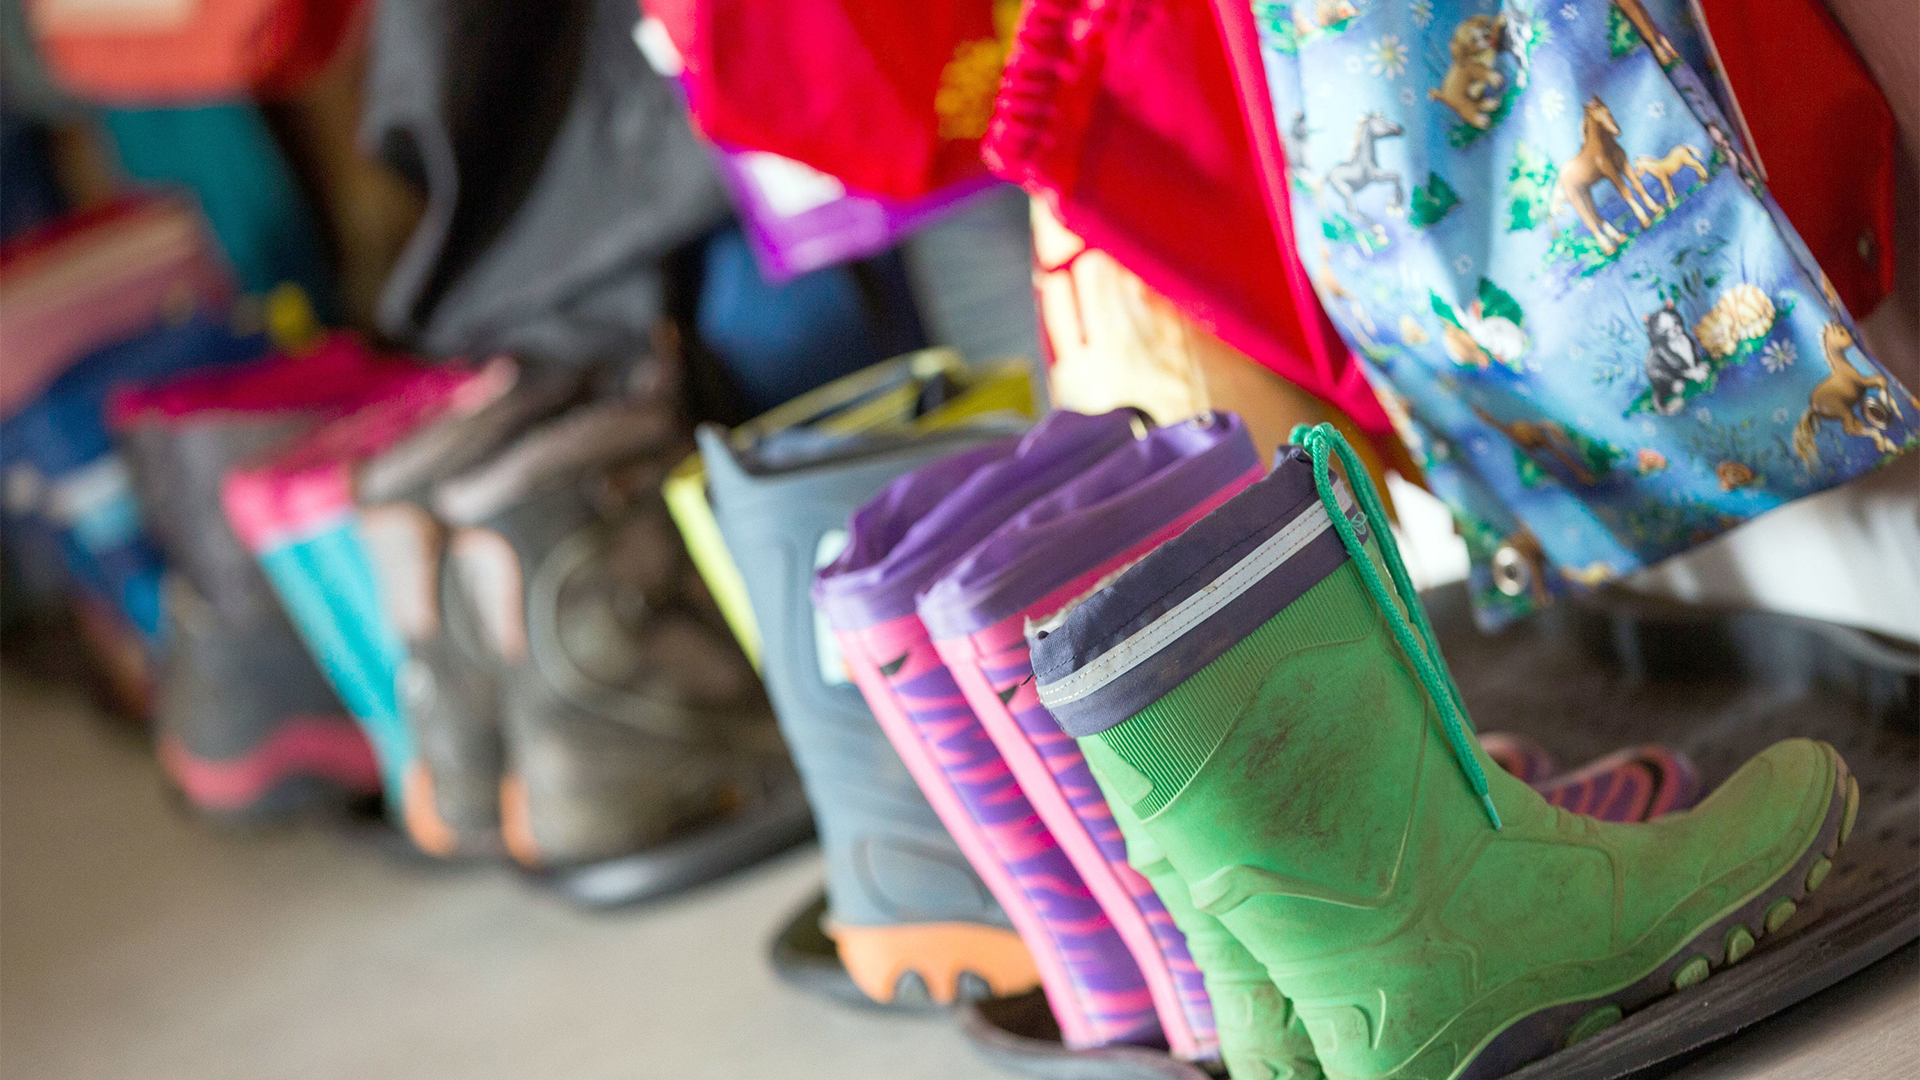 Gummistiefel für Kinder stehen in der Garderobe einer Kindertagesstätte | Bildquelle: dpa